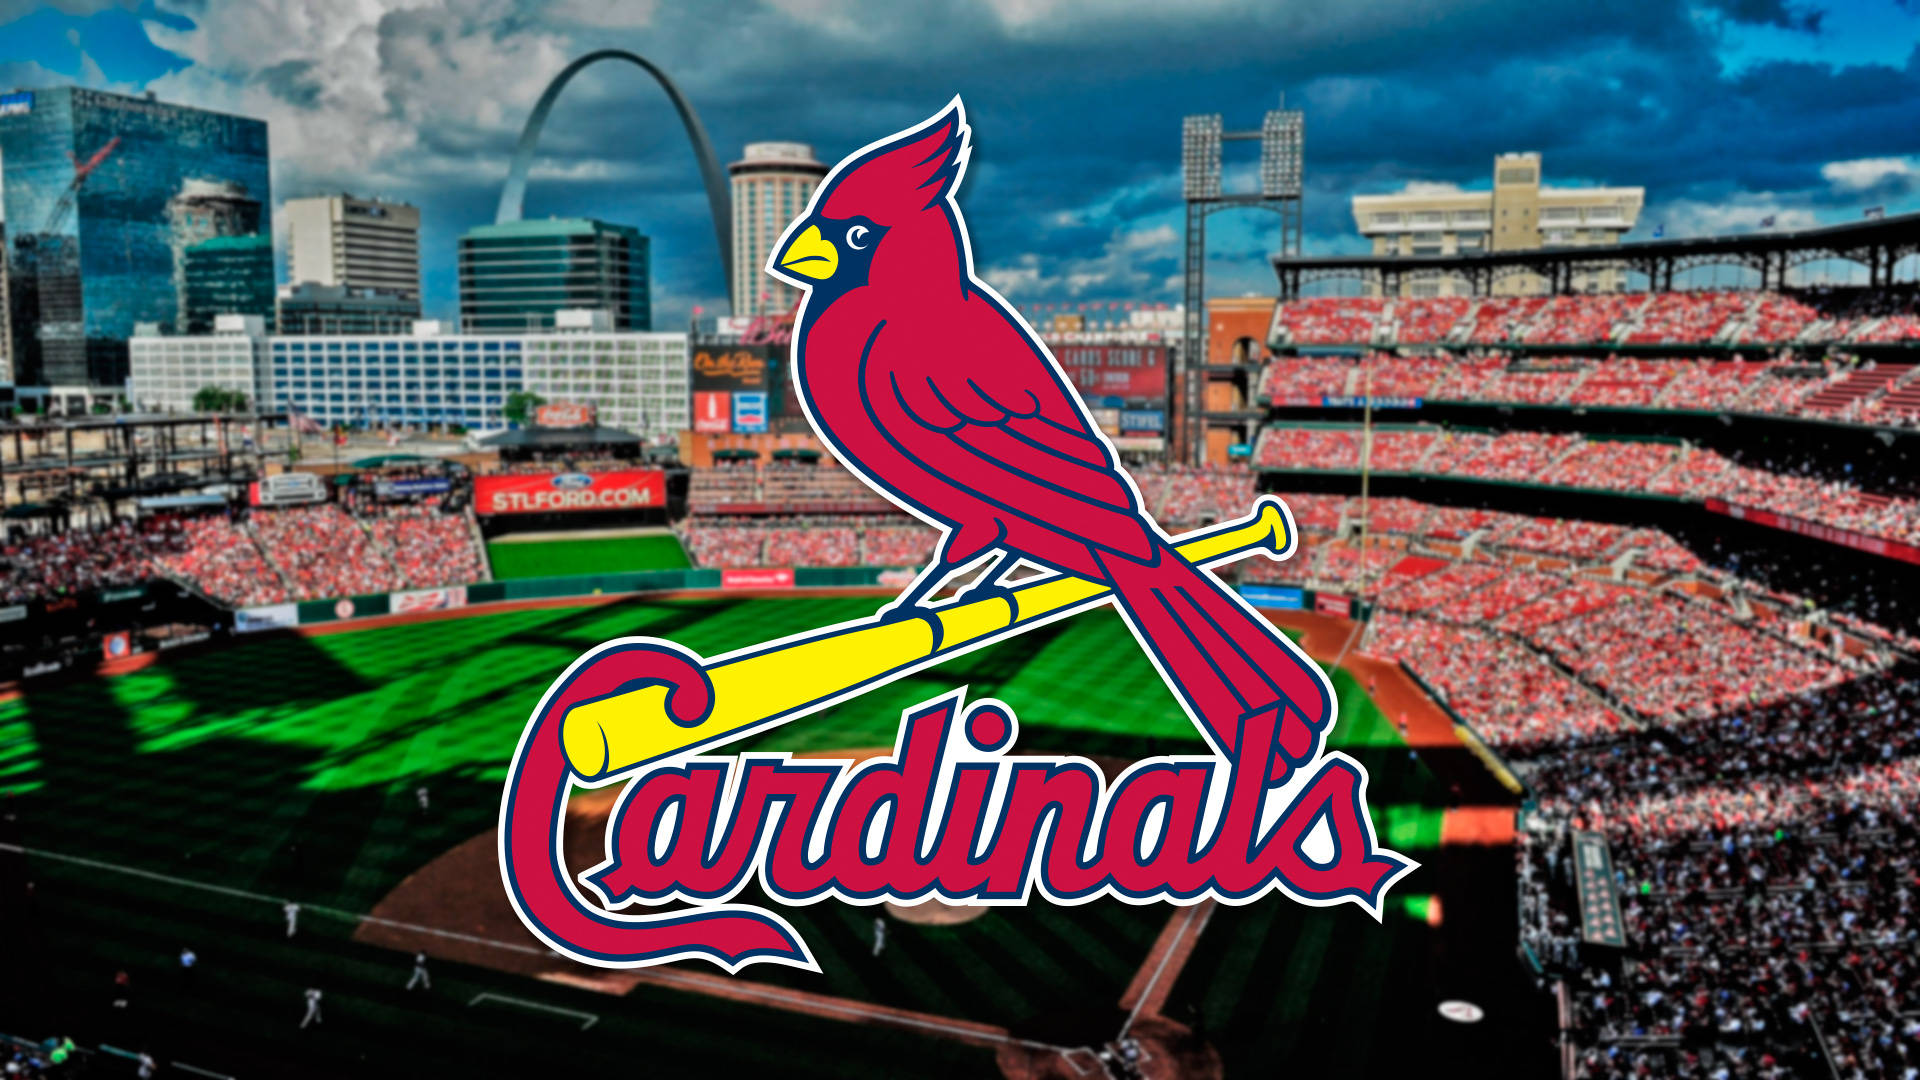 St Louis Cardinals Red Bird On Field